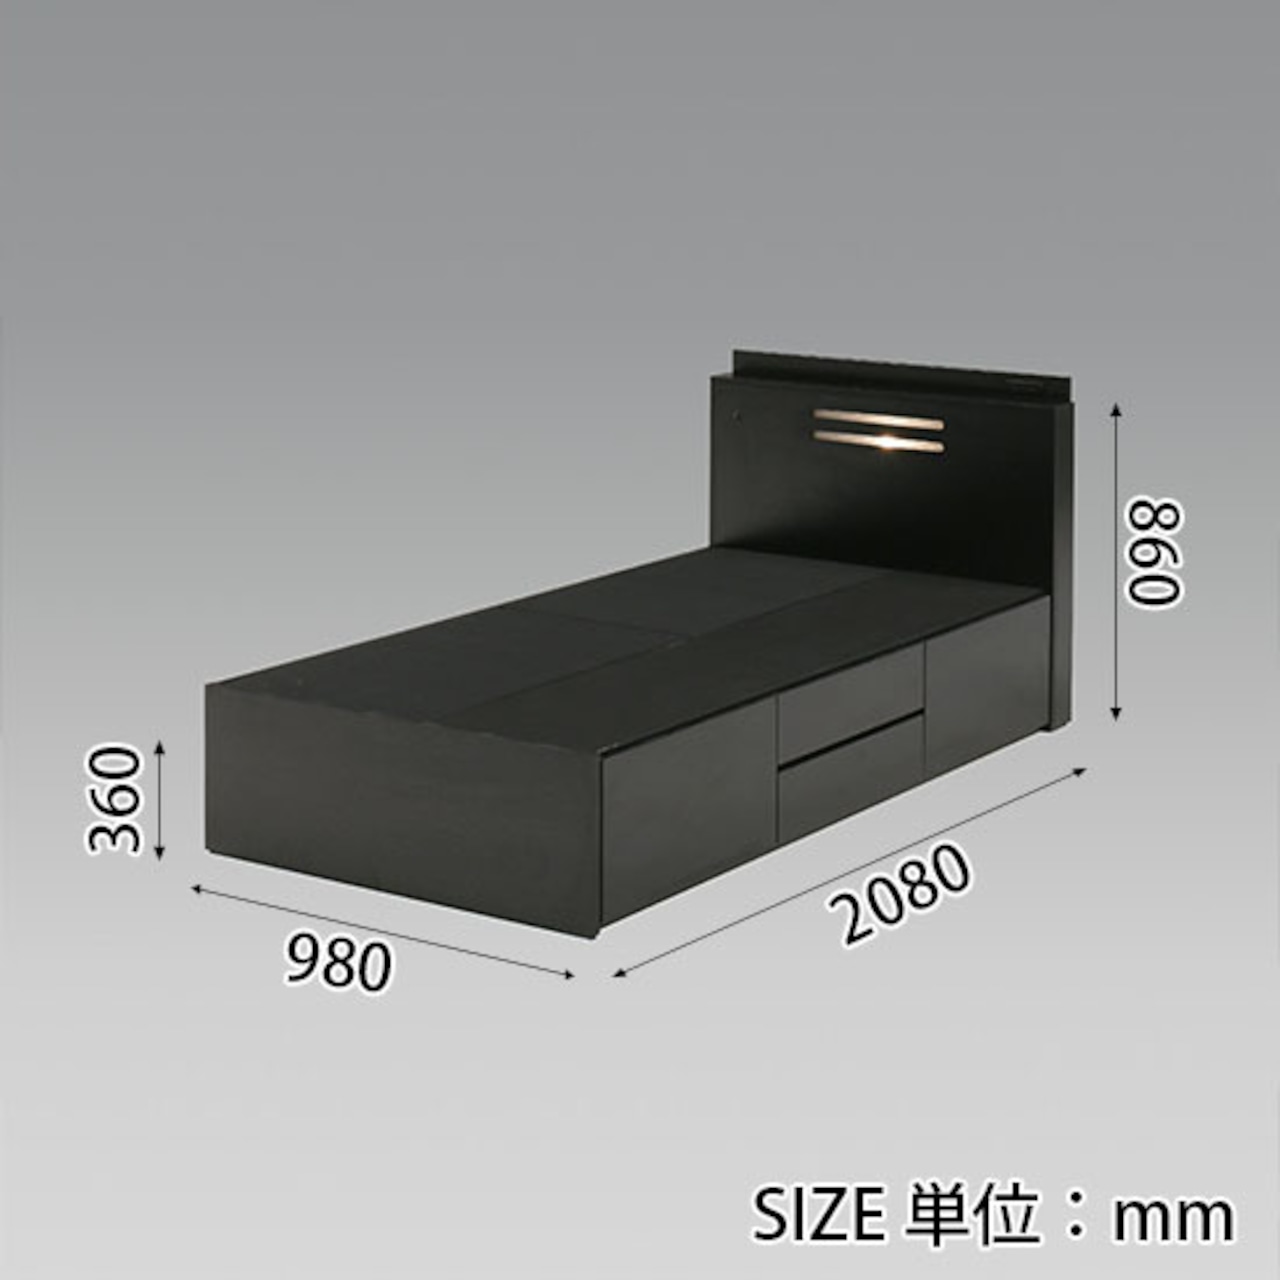 【シングル】ベッド シングルベッド 収納付 ライト付 コンセント付 寝具 (全2色)